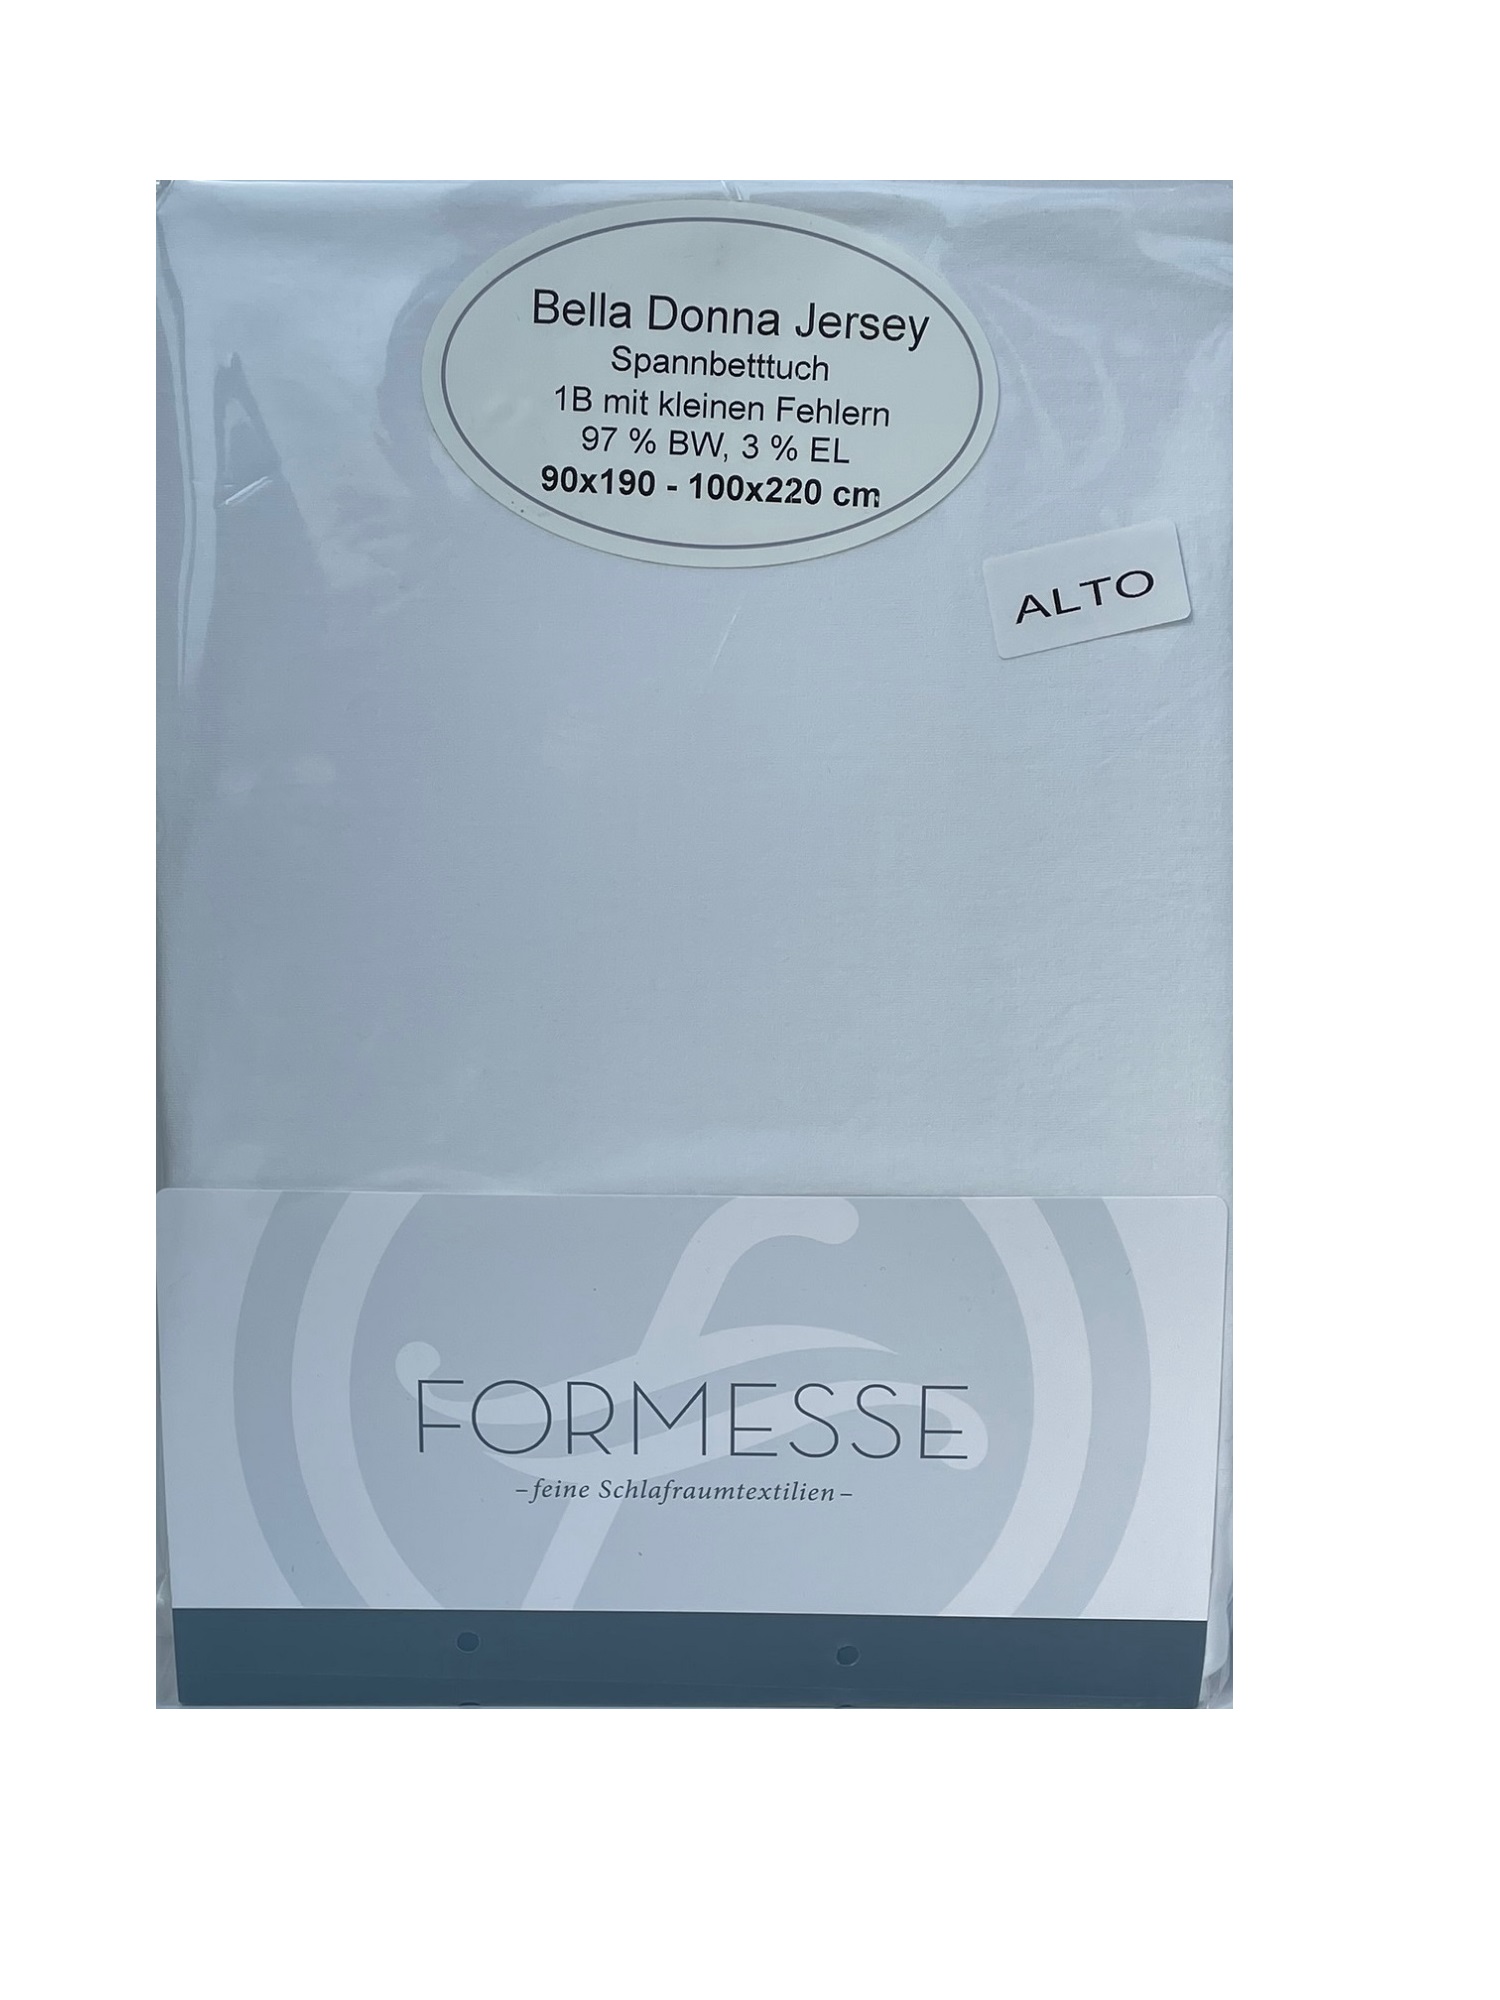 Formesse Bella Donna Jersey Alto Boxspring Spannbetttuch 1B 90x190 - 100x220 cm cm Weiss 9000